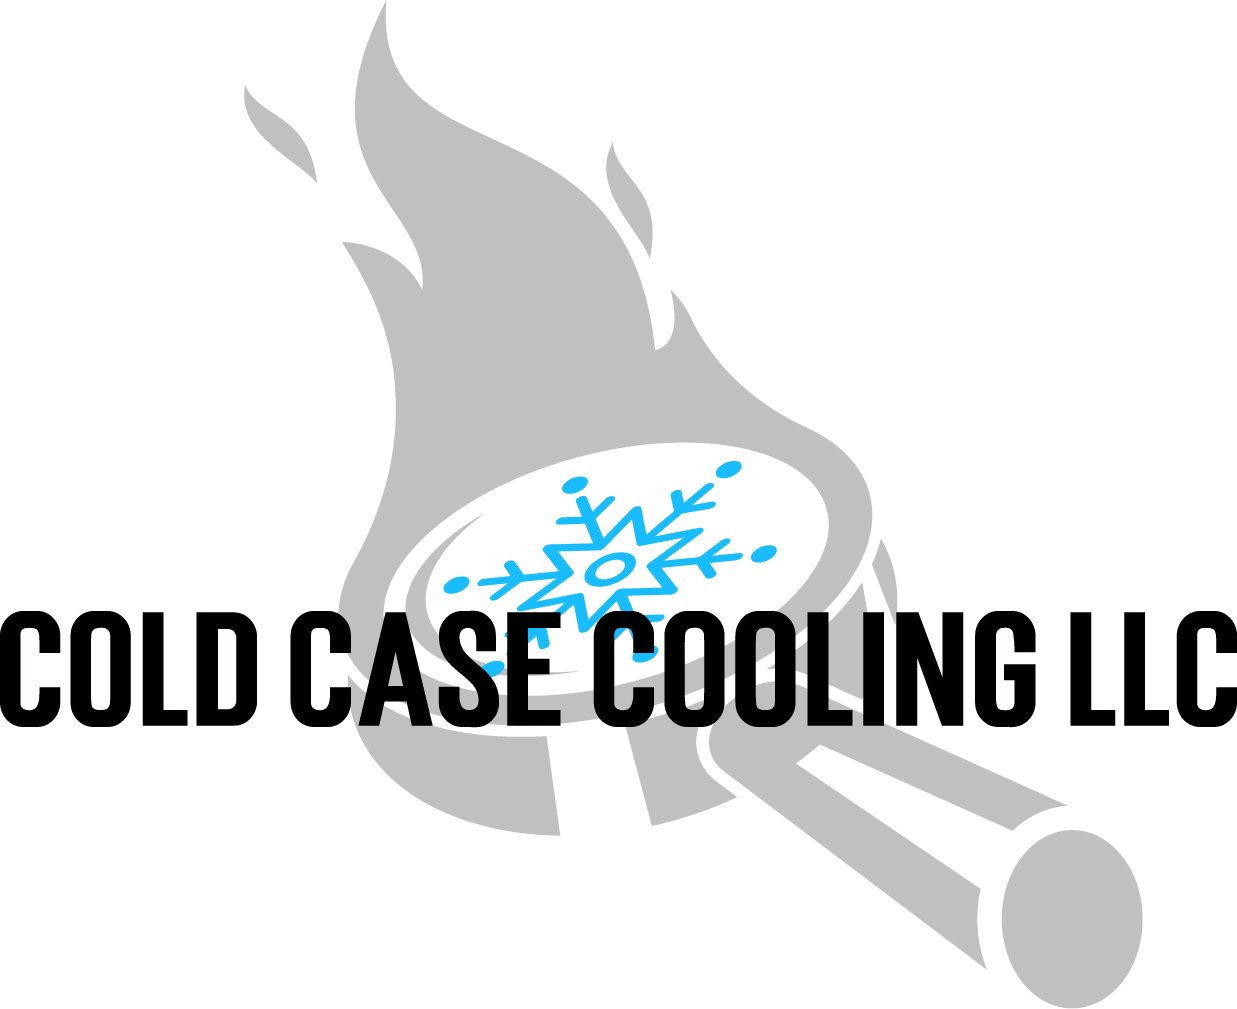 Cold Case Cooling LLC.